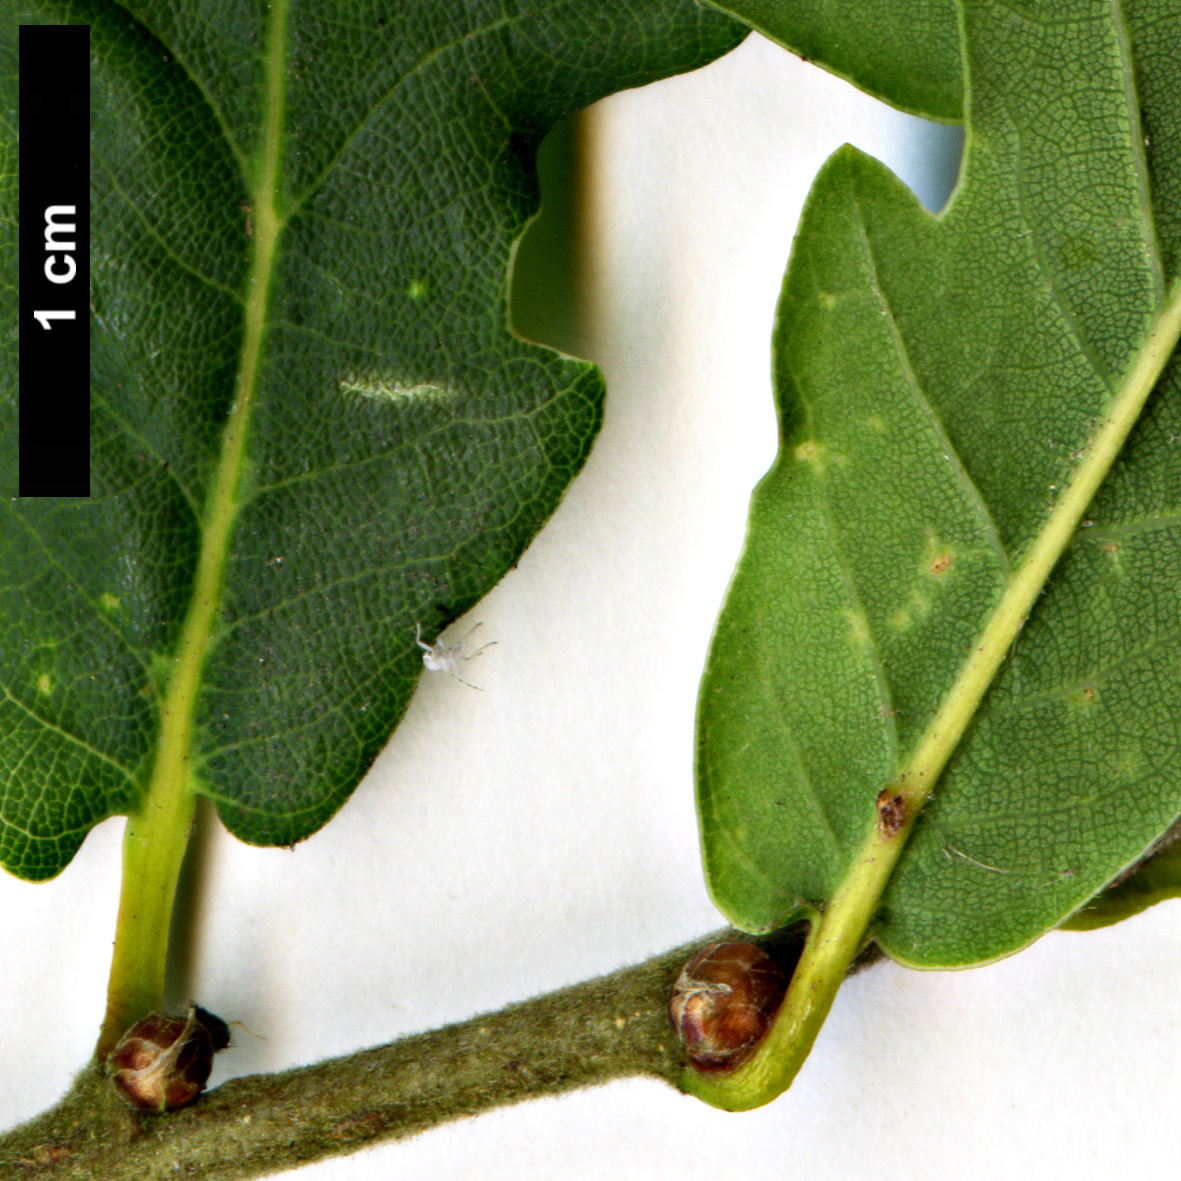 High resolution image: Family: Fagaceae - Genus: Quercus - Taxon: robur × Q.serrata